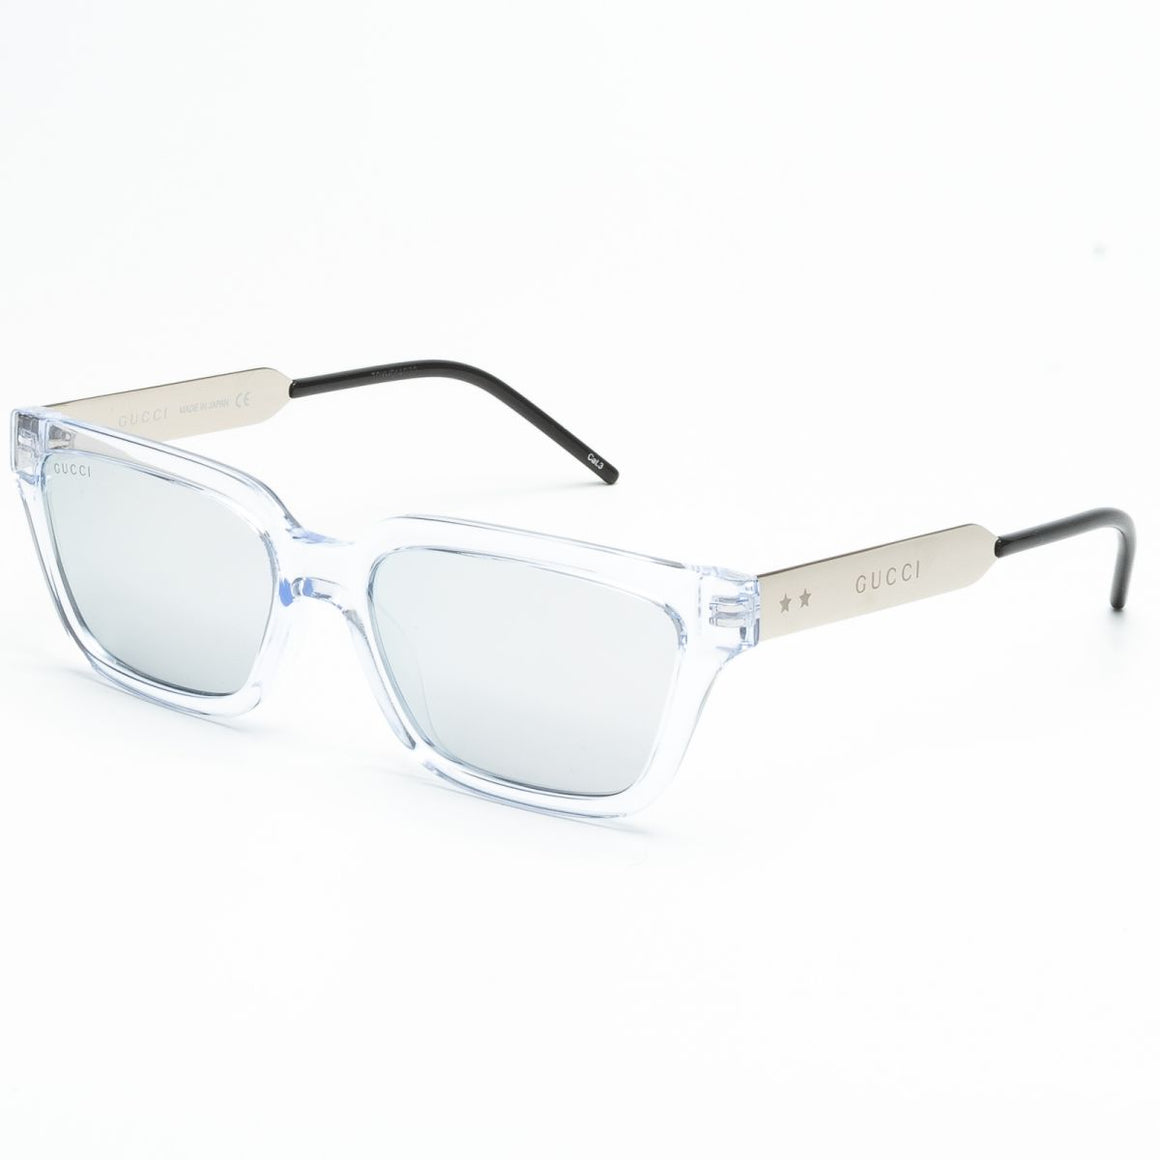 Mirrored Silver Square Men's Sunglasses